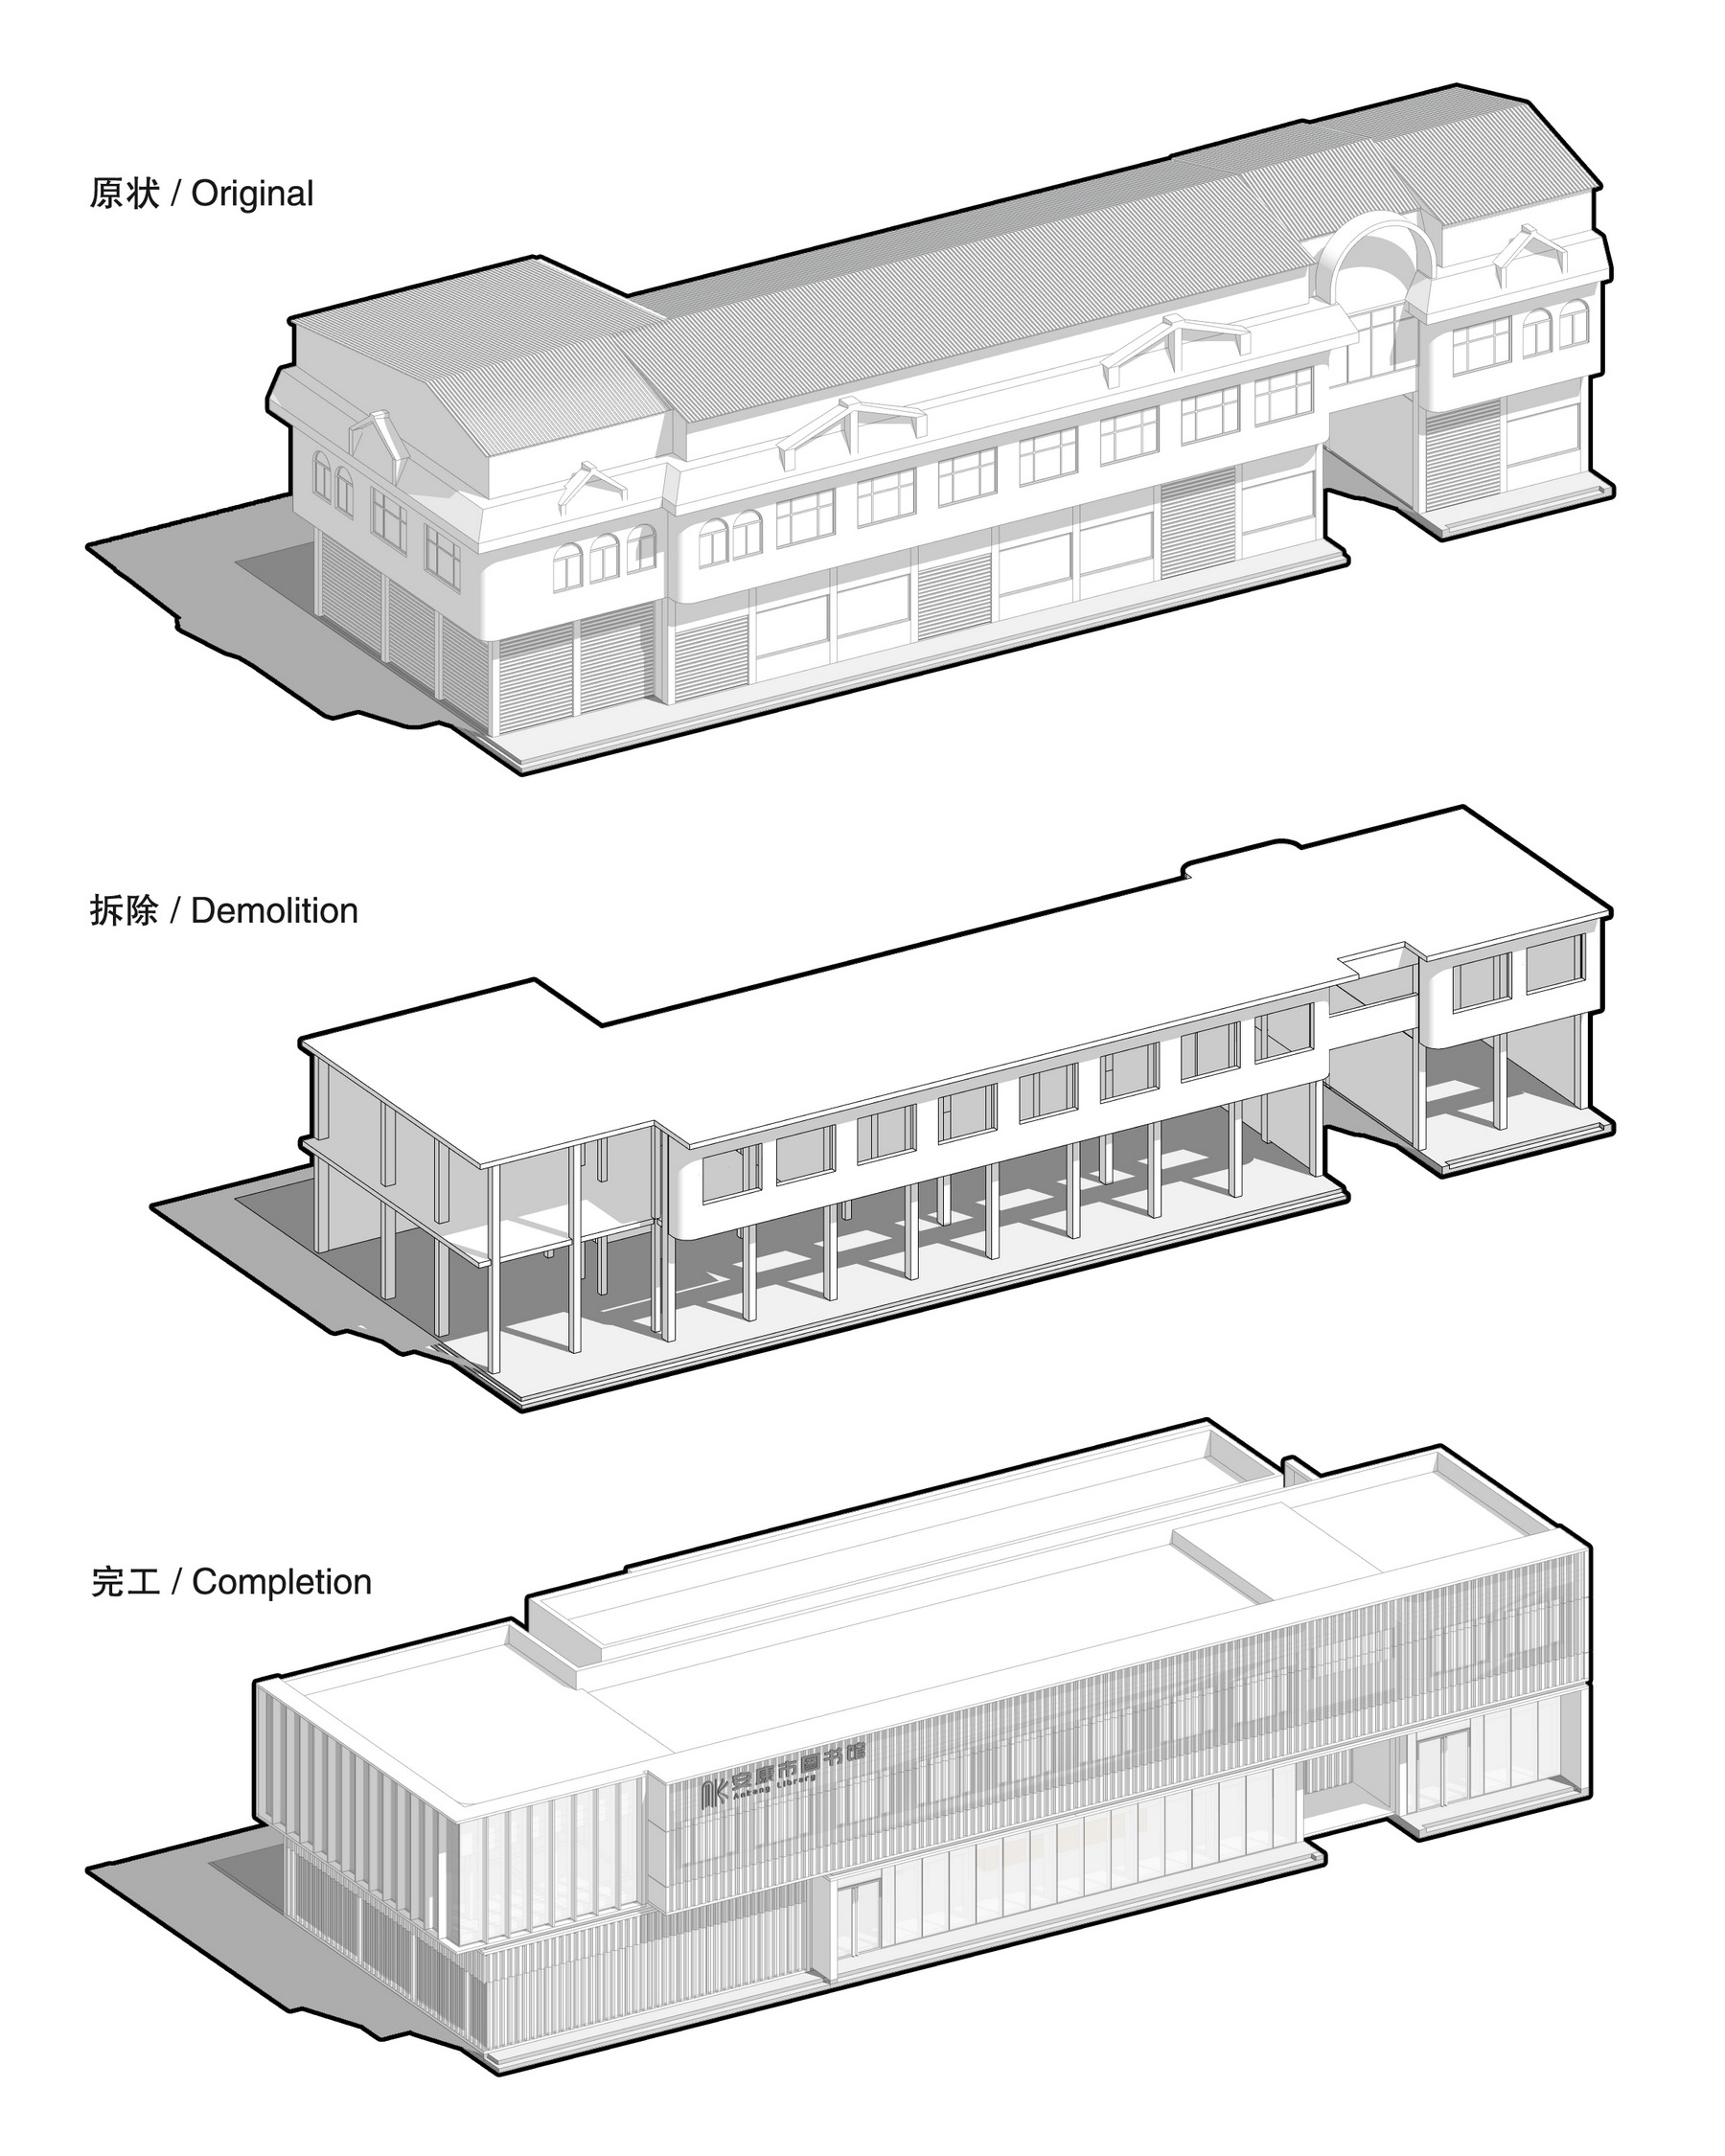 安康市图书馆改造 室内设计 /  UUA建筑师事务所